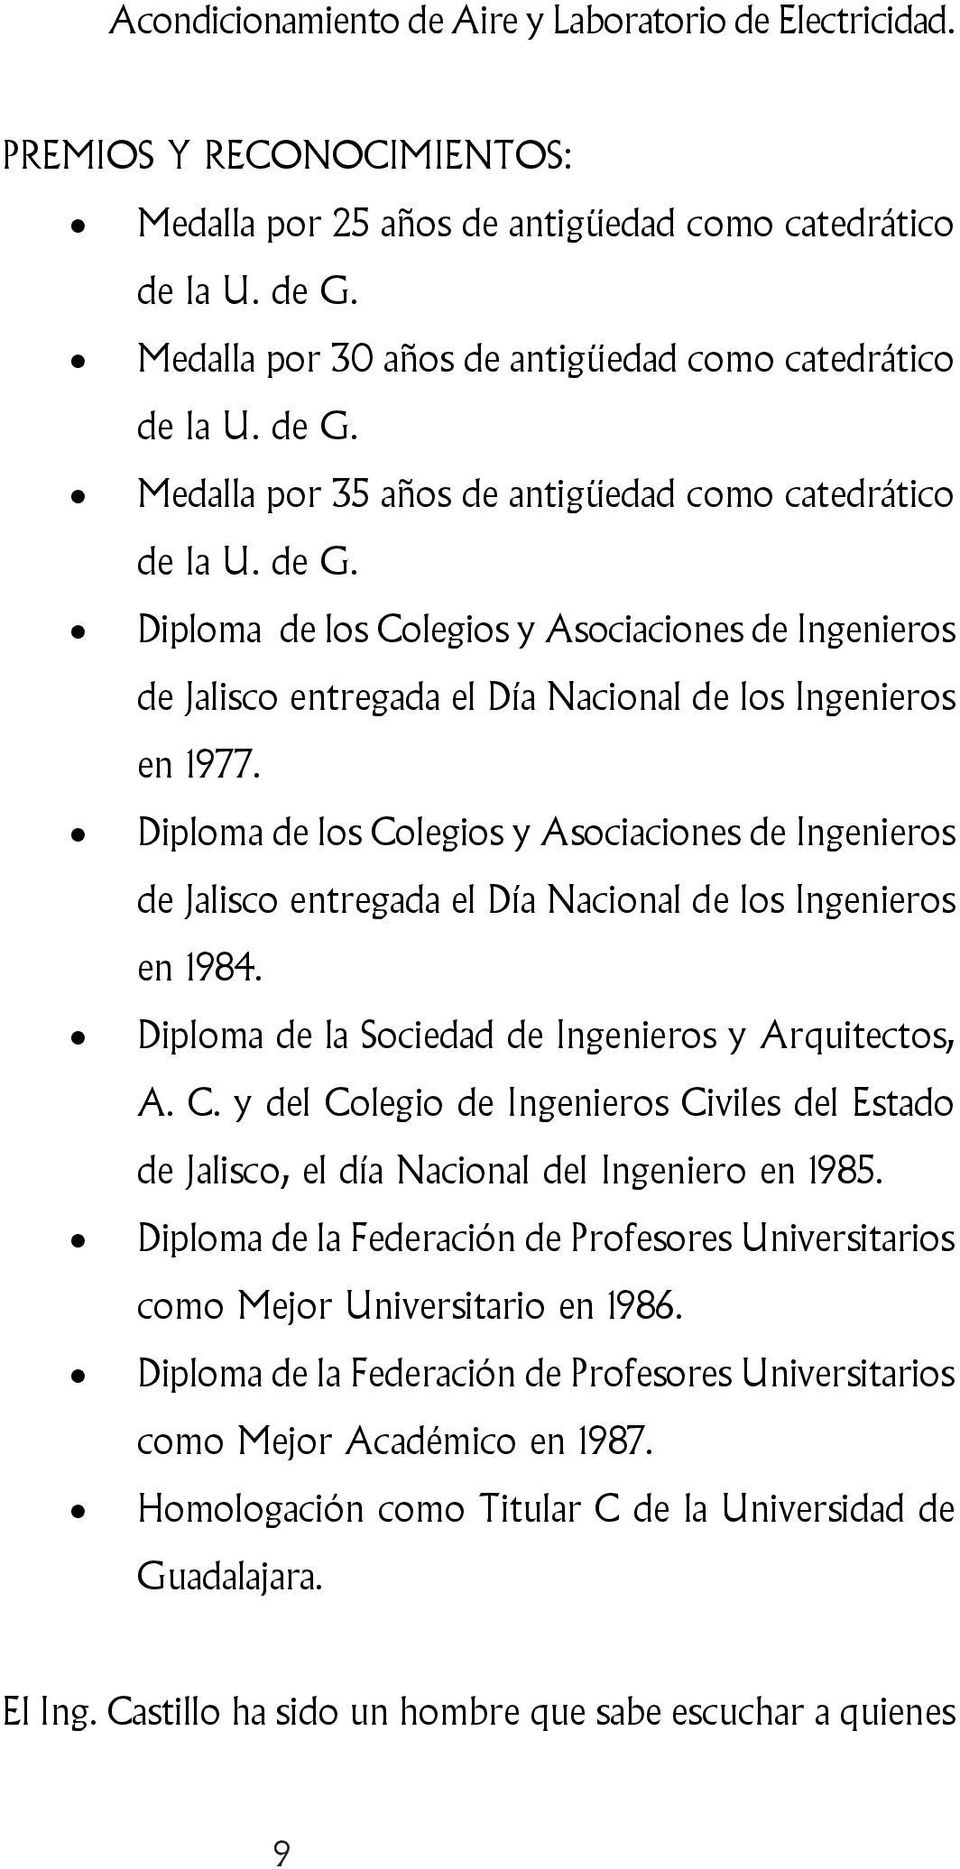 Diploma de los Colegios y Asociaciones de Ingenieros de Jalisco entregada el Día Nacional de los Ingenieros en 1984. Diploma de la Sociedad de Ingenieros y Arquitectos, A. C. y del Colegio de Ingenieros Civiles del Estado de Jalisco, el día Nacional del Ingeniero en 1985.